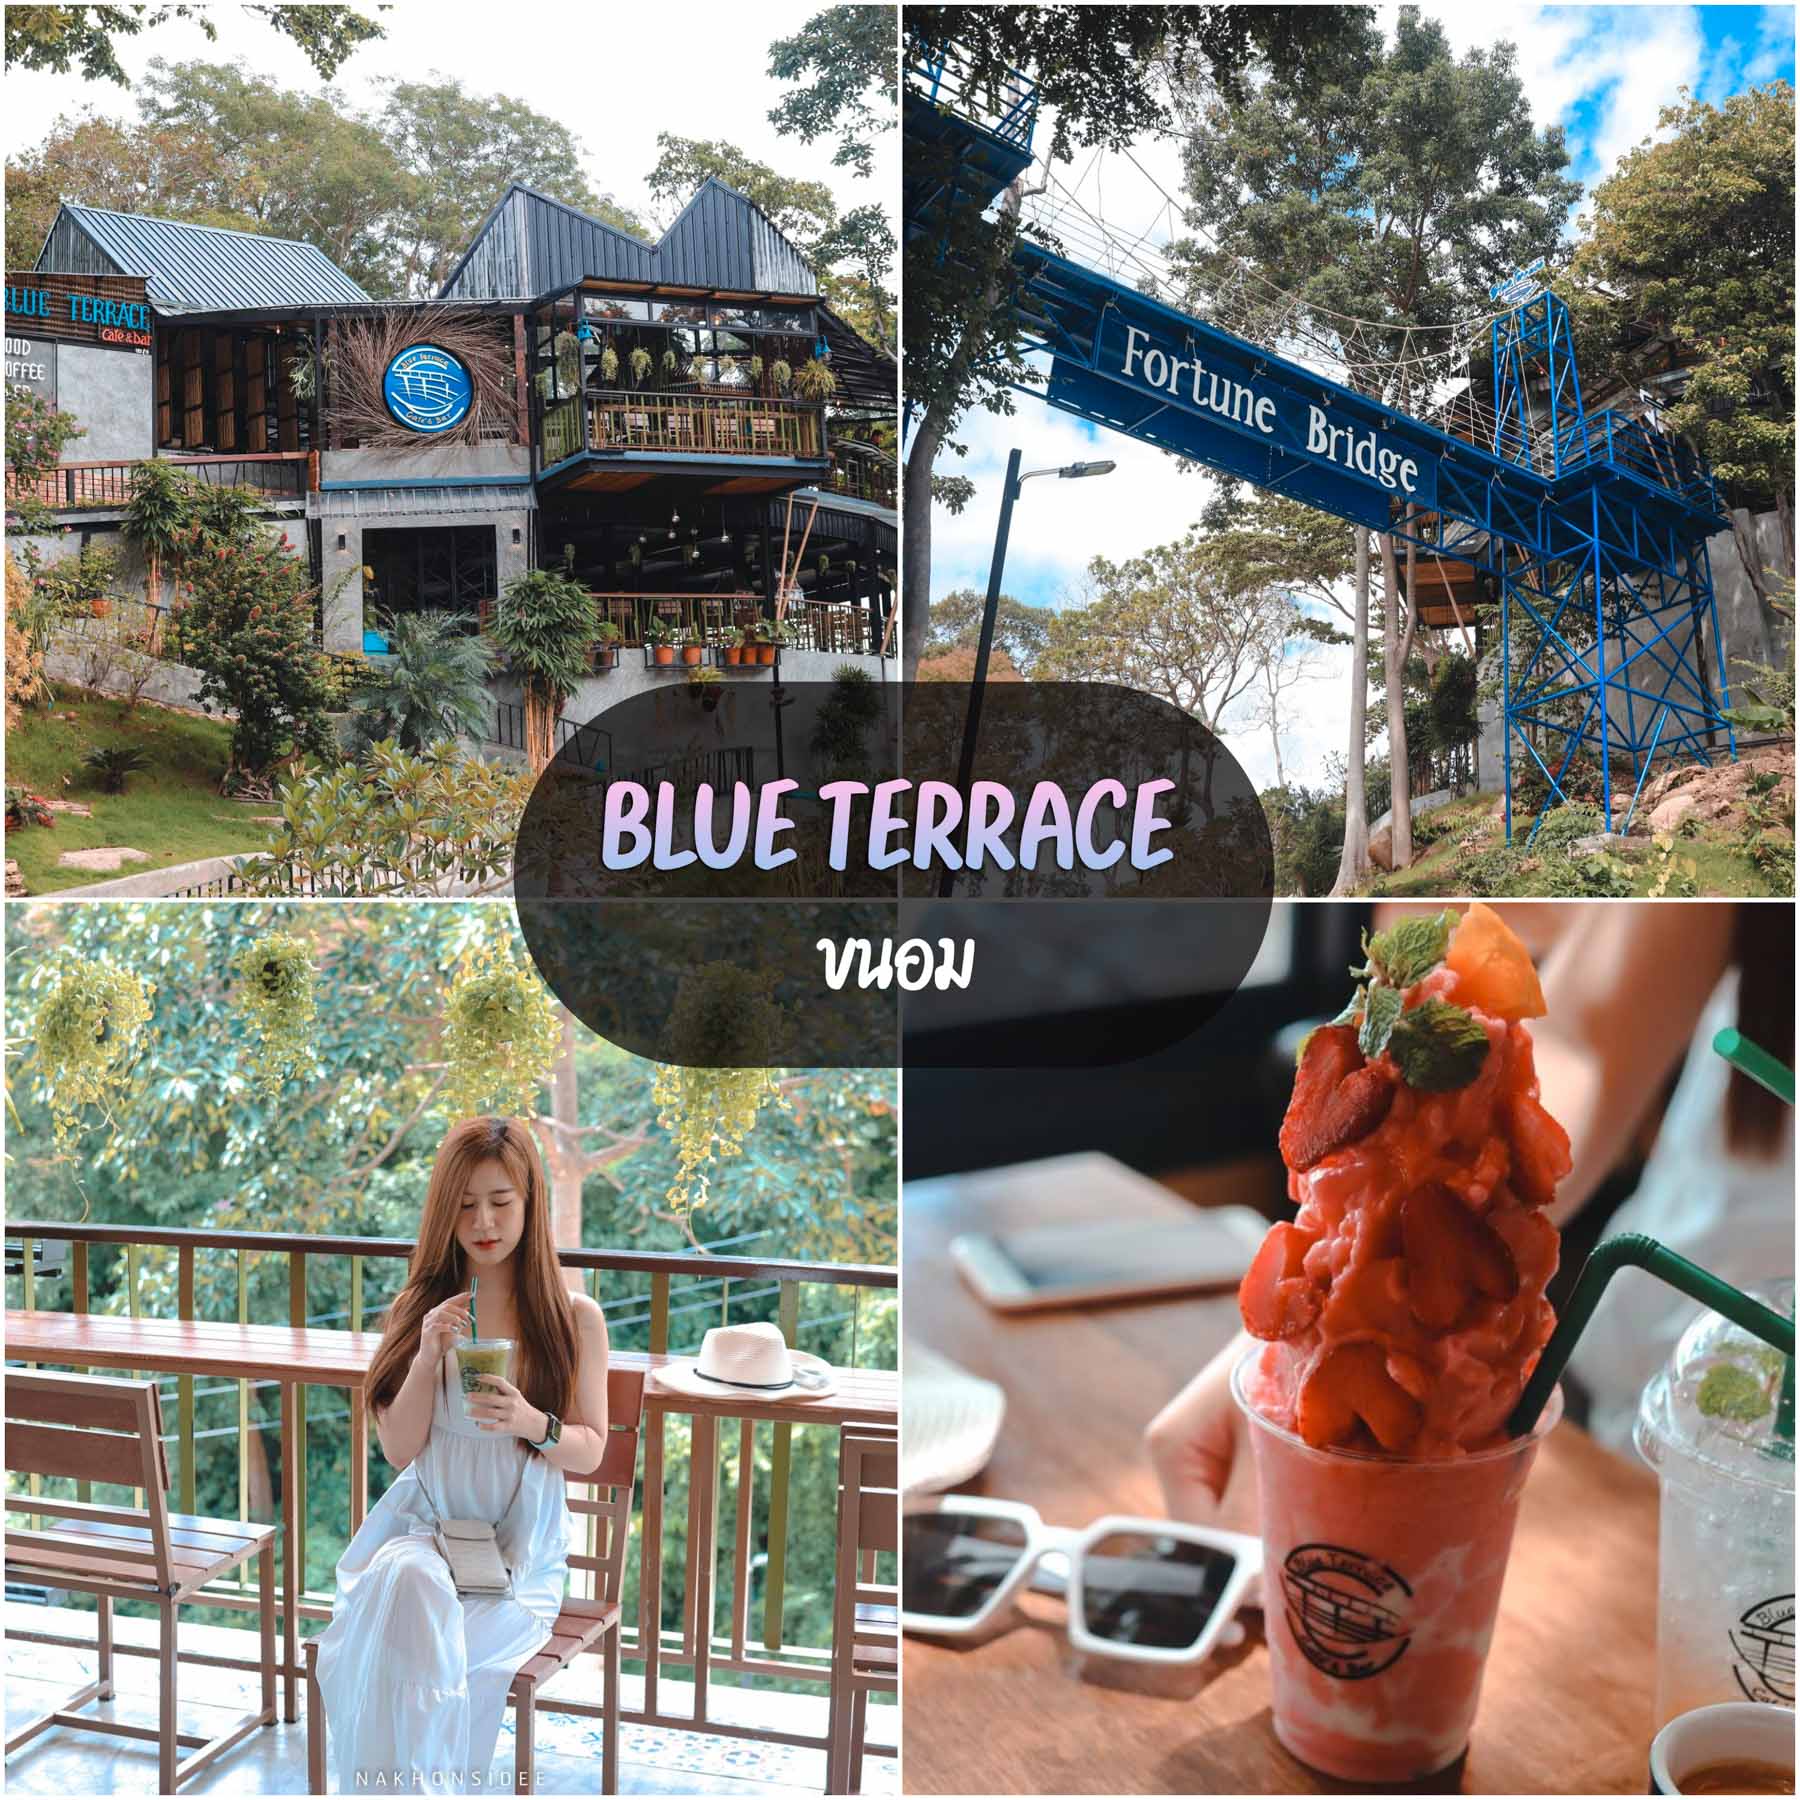 Blue-Terrace-Cafe ร้านอาหาร-Cafe---Restaurant-เปิดใหม่ที่เรียกได้ว่า-10/10-แบบจัดเต็มจริงๆ-ทั้งวิวดี-อาหารเครื่องดื่มอร่อย
ร้านนั่งสบาย-มีหลายๆโซนให้นั่ง-เรียกได้ว่าเป็นทั้ง--ร้านอาหาร-คาเฟ่-นครศรีธรรมราช--วิวหลักล้านจริงๆ-รีวิวกันเลย-เริ่มจากบรรยากาศ-ร้านกว้างตั้งอยู่บนเขา
มีทั้งโซนคาเฟ่ห้องแอร์-นั่งสบายๆ-ฟินๆ-โซนด้านนอก-โซนบาร์-โซนป่าๆใต้ต้นไม้-และอีกมากมาย-รองรับลูกค้าได้ถึง-800-คนกันเลยทีเดียว-มาจัดเลี้ยง-สัมมนา-จัดงานแต่งงานก็ได้น้าา สิชล,ขนอม,ที่พัก,ของกิน,โรงแรม,ที่เที่ยว,จุดเช็คอิน,วัดเจดีย์,ตาไข่